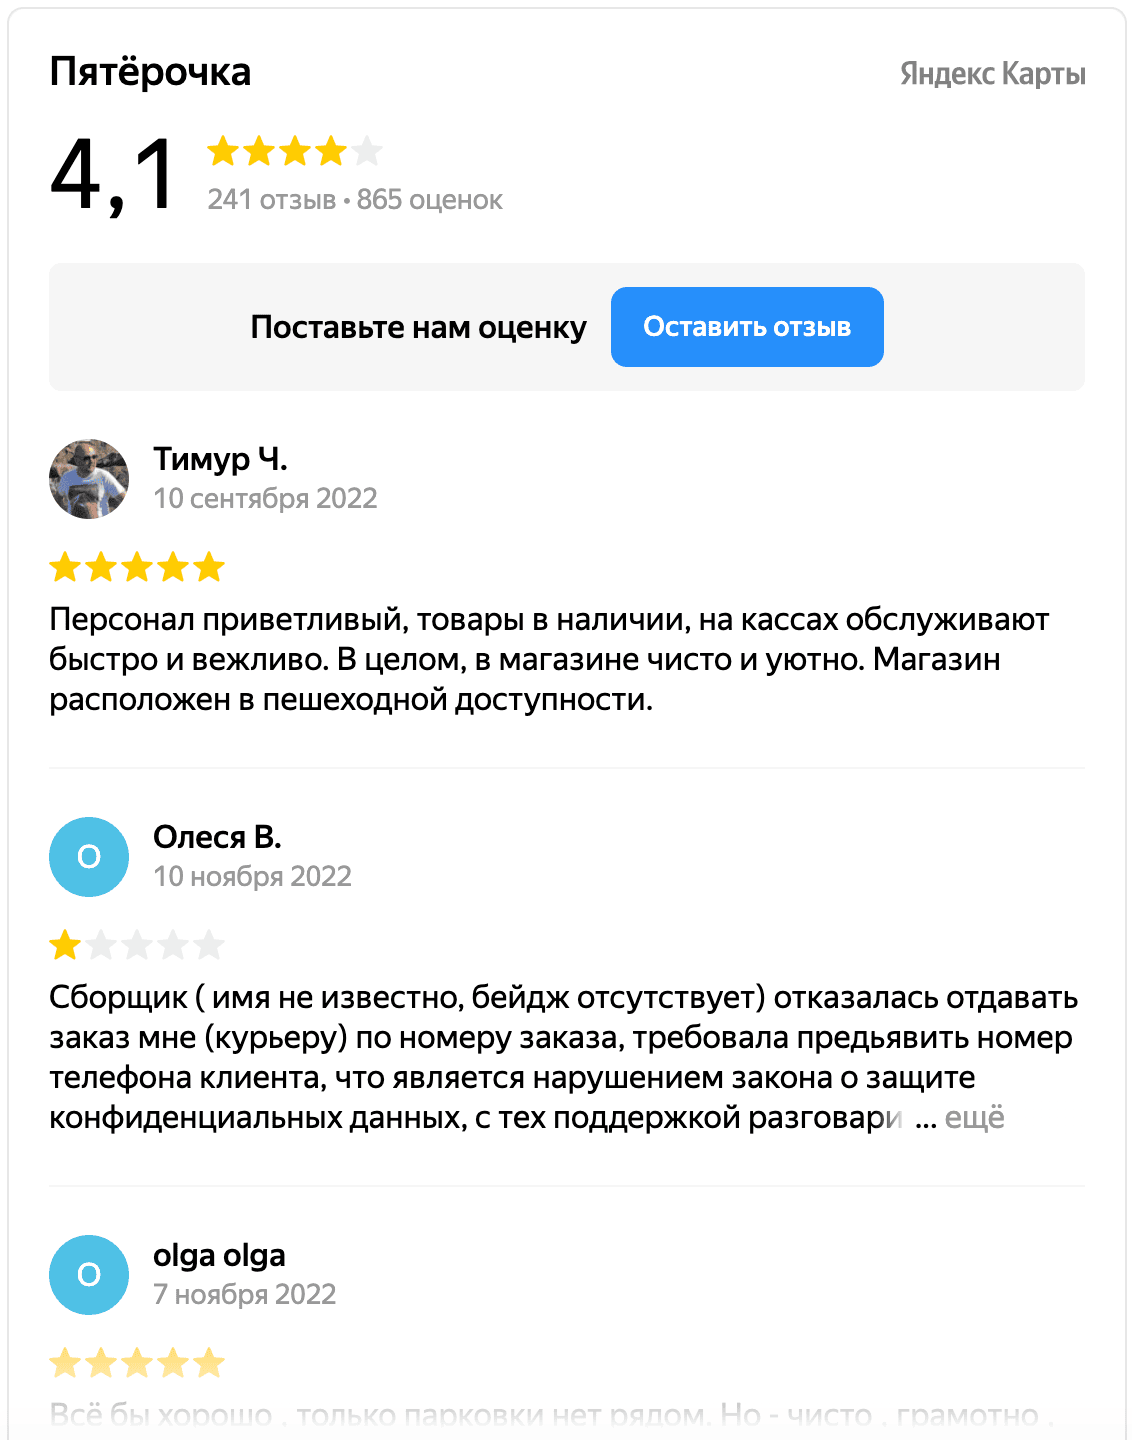 Скриншот отзывов на Пятерочку из виджета Яндекс Карт